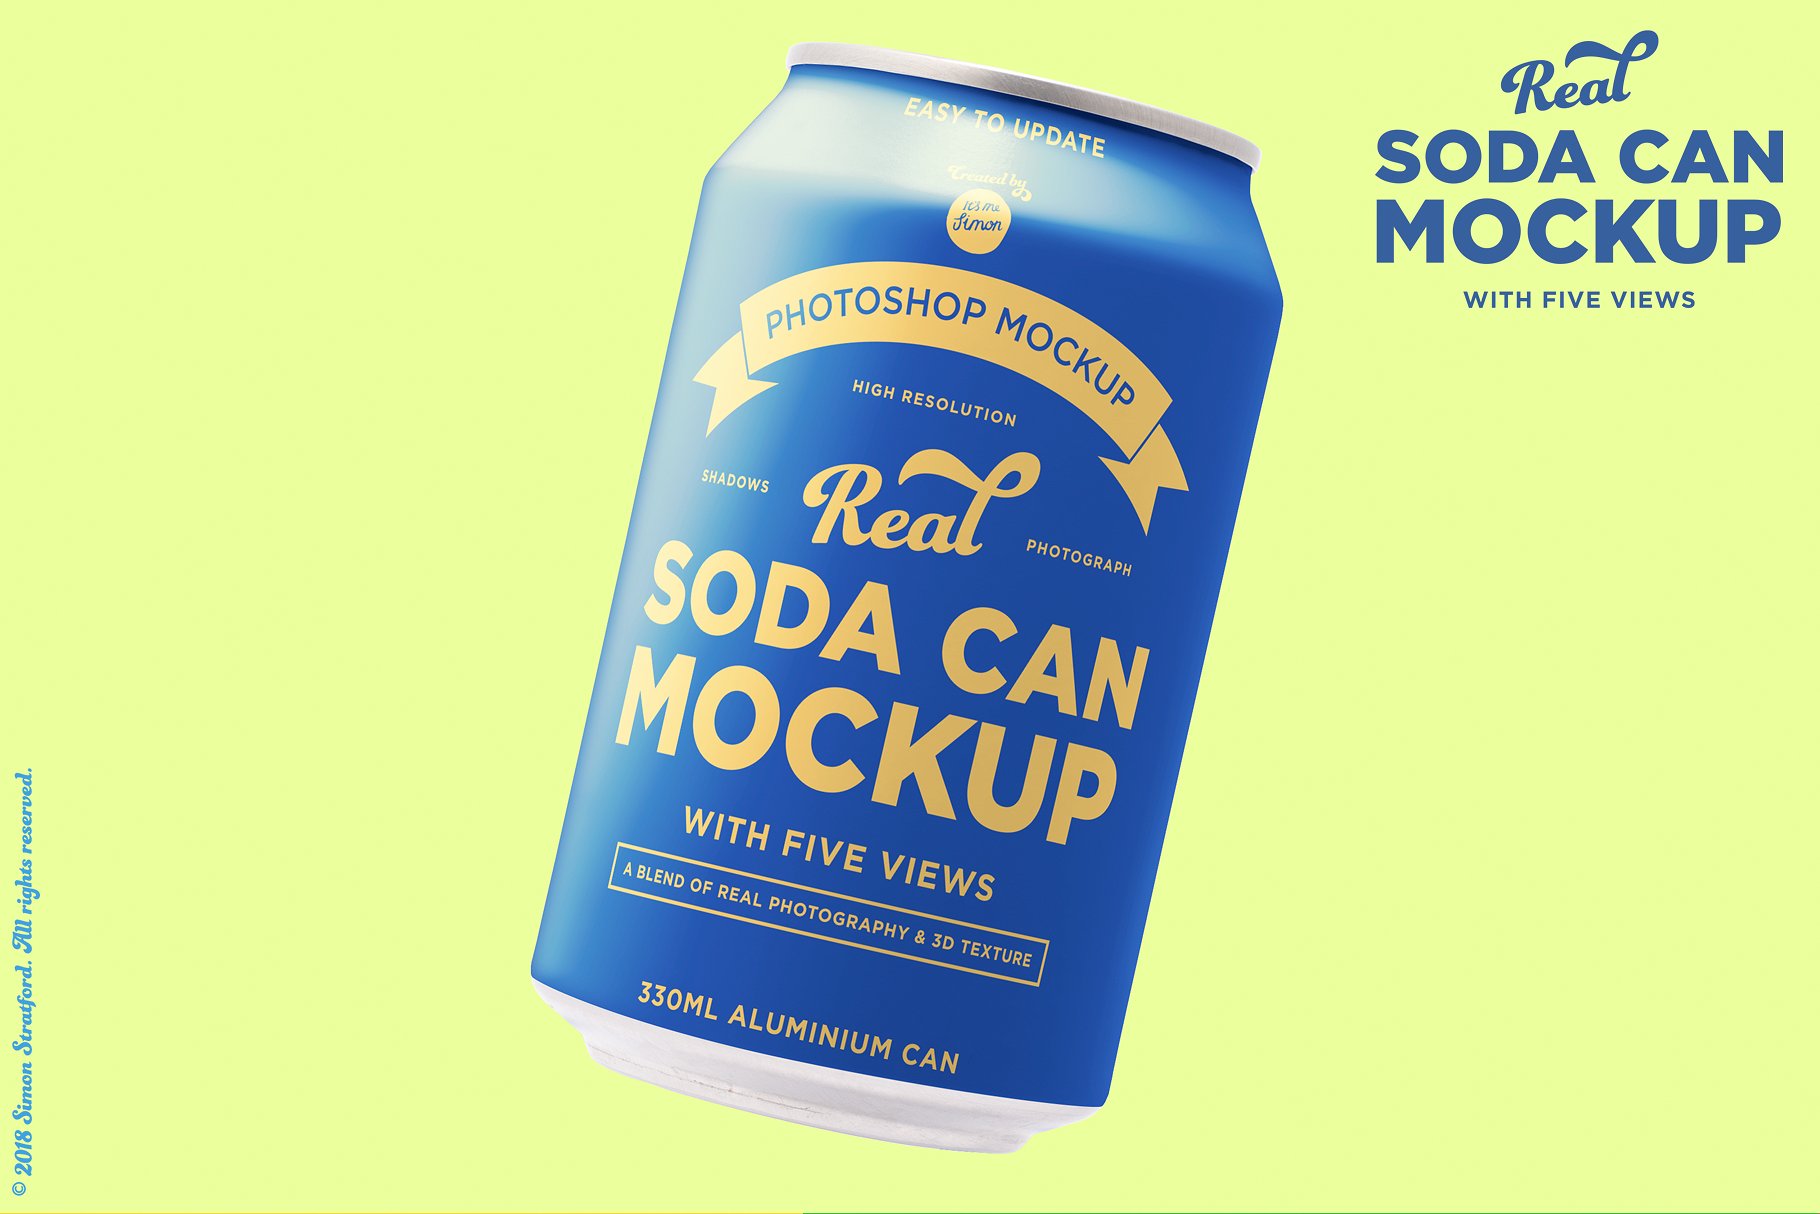 苏打水饮料易拉罐外观设计样机 Real soda can mockup for photoshop插图(5)